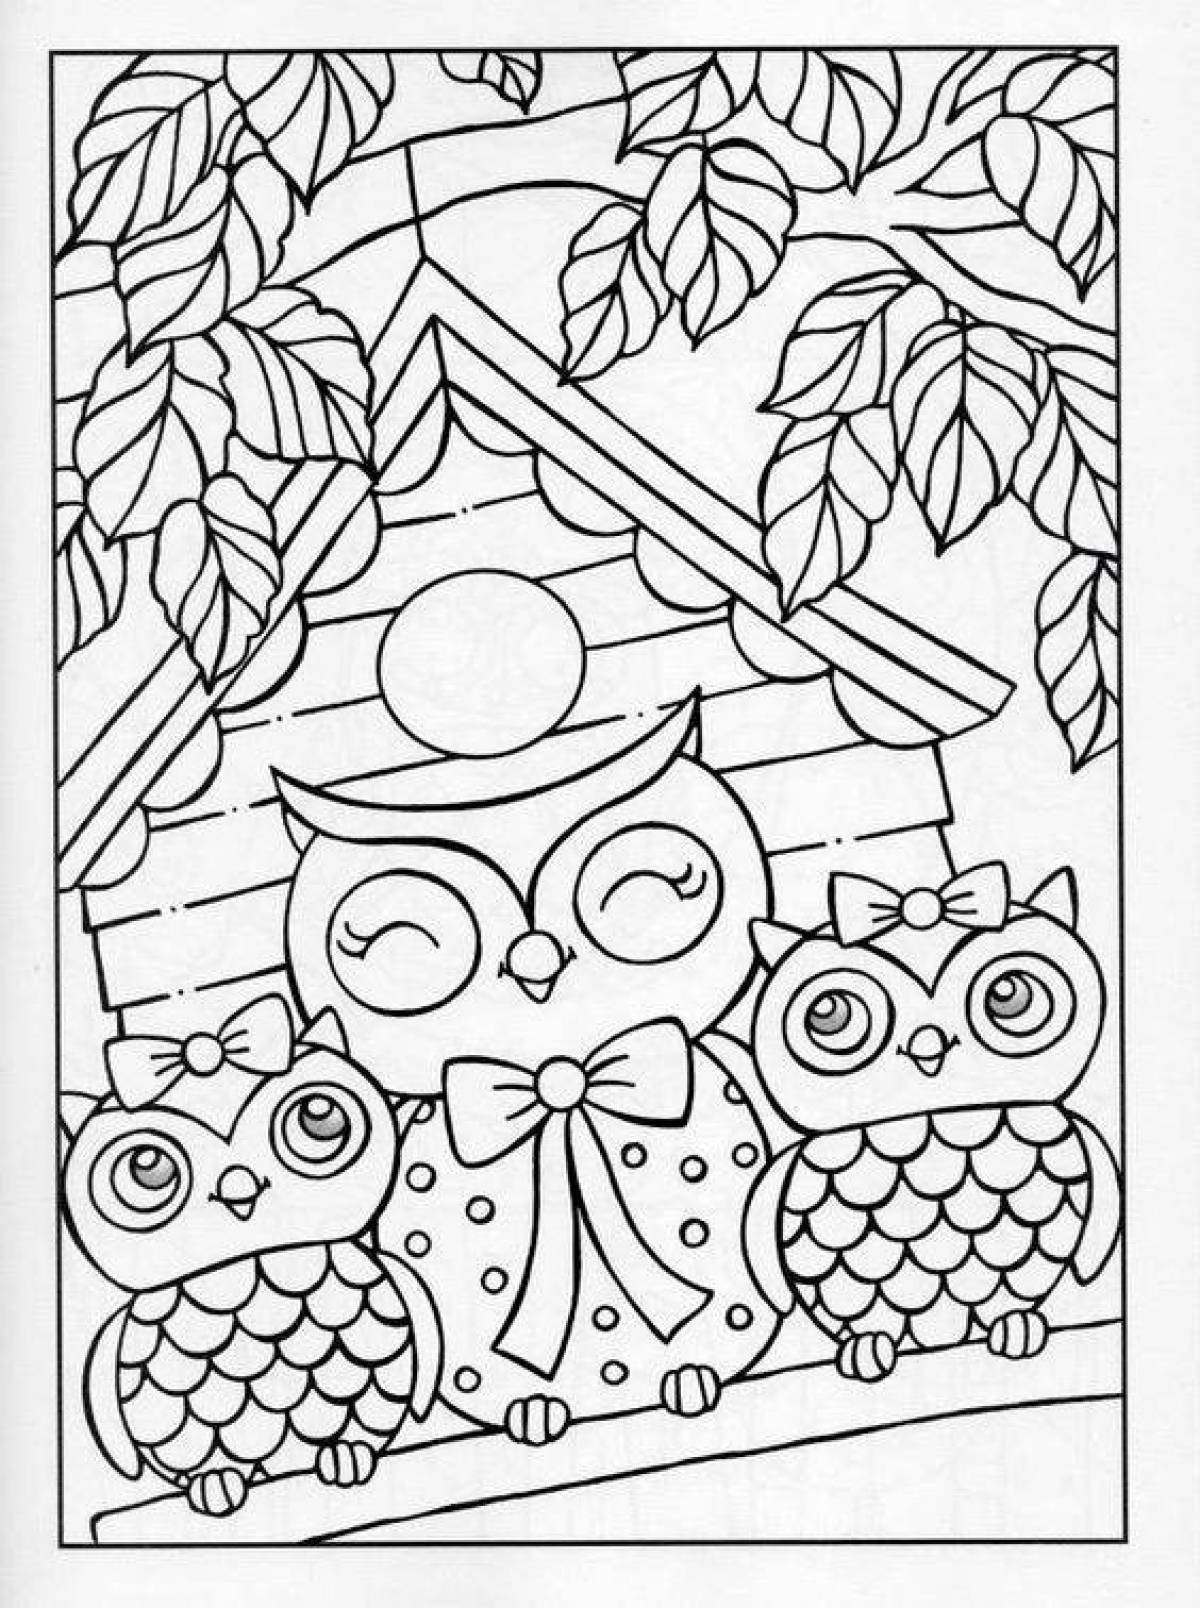 Colouring serene owl house